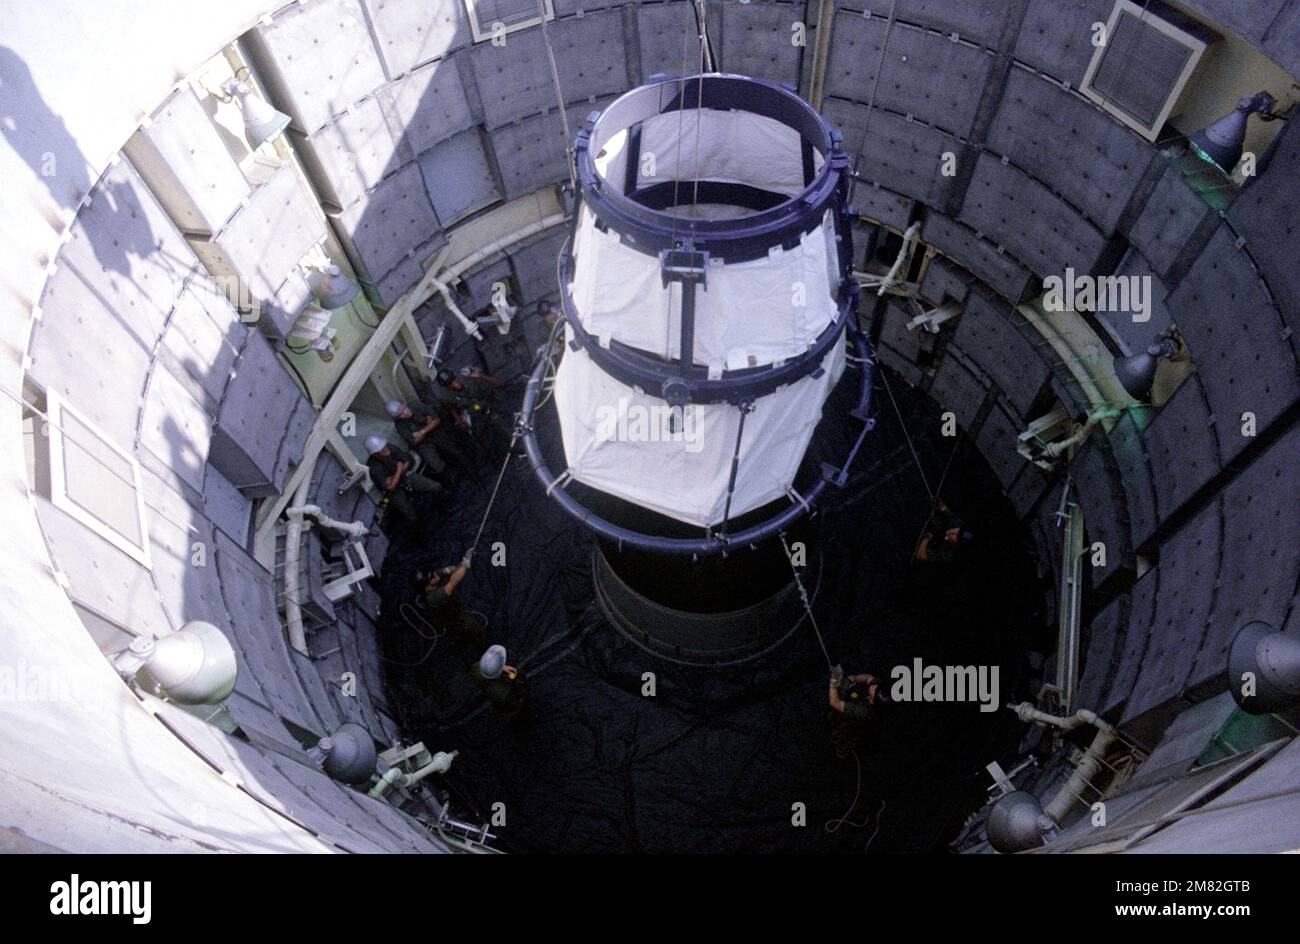 Un collier de véhicule réentré est abaissé dans un silo alors que les membres de l'aile stratégique missile 381st se préparent à la première désactivation d'un missile Titan II à McConnell. Base : McConnell Air Force base État : Kansas (KS) pays : États-Unis d'Amérique (USA) Banque D'Images